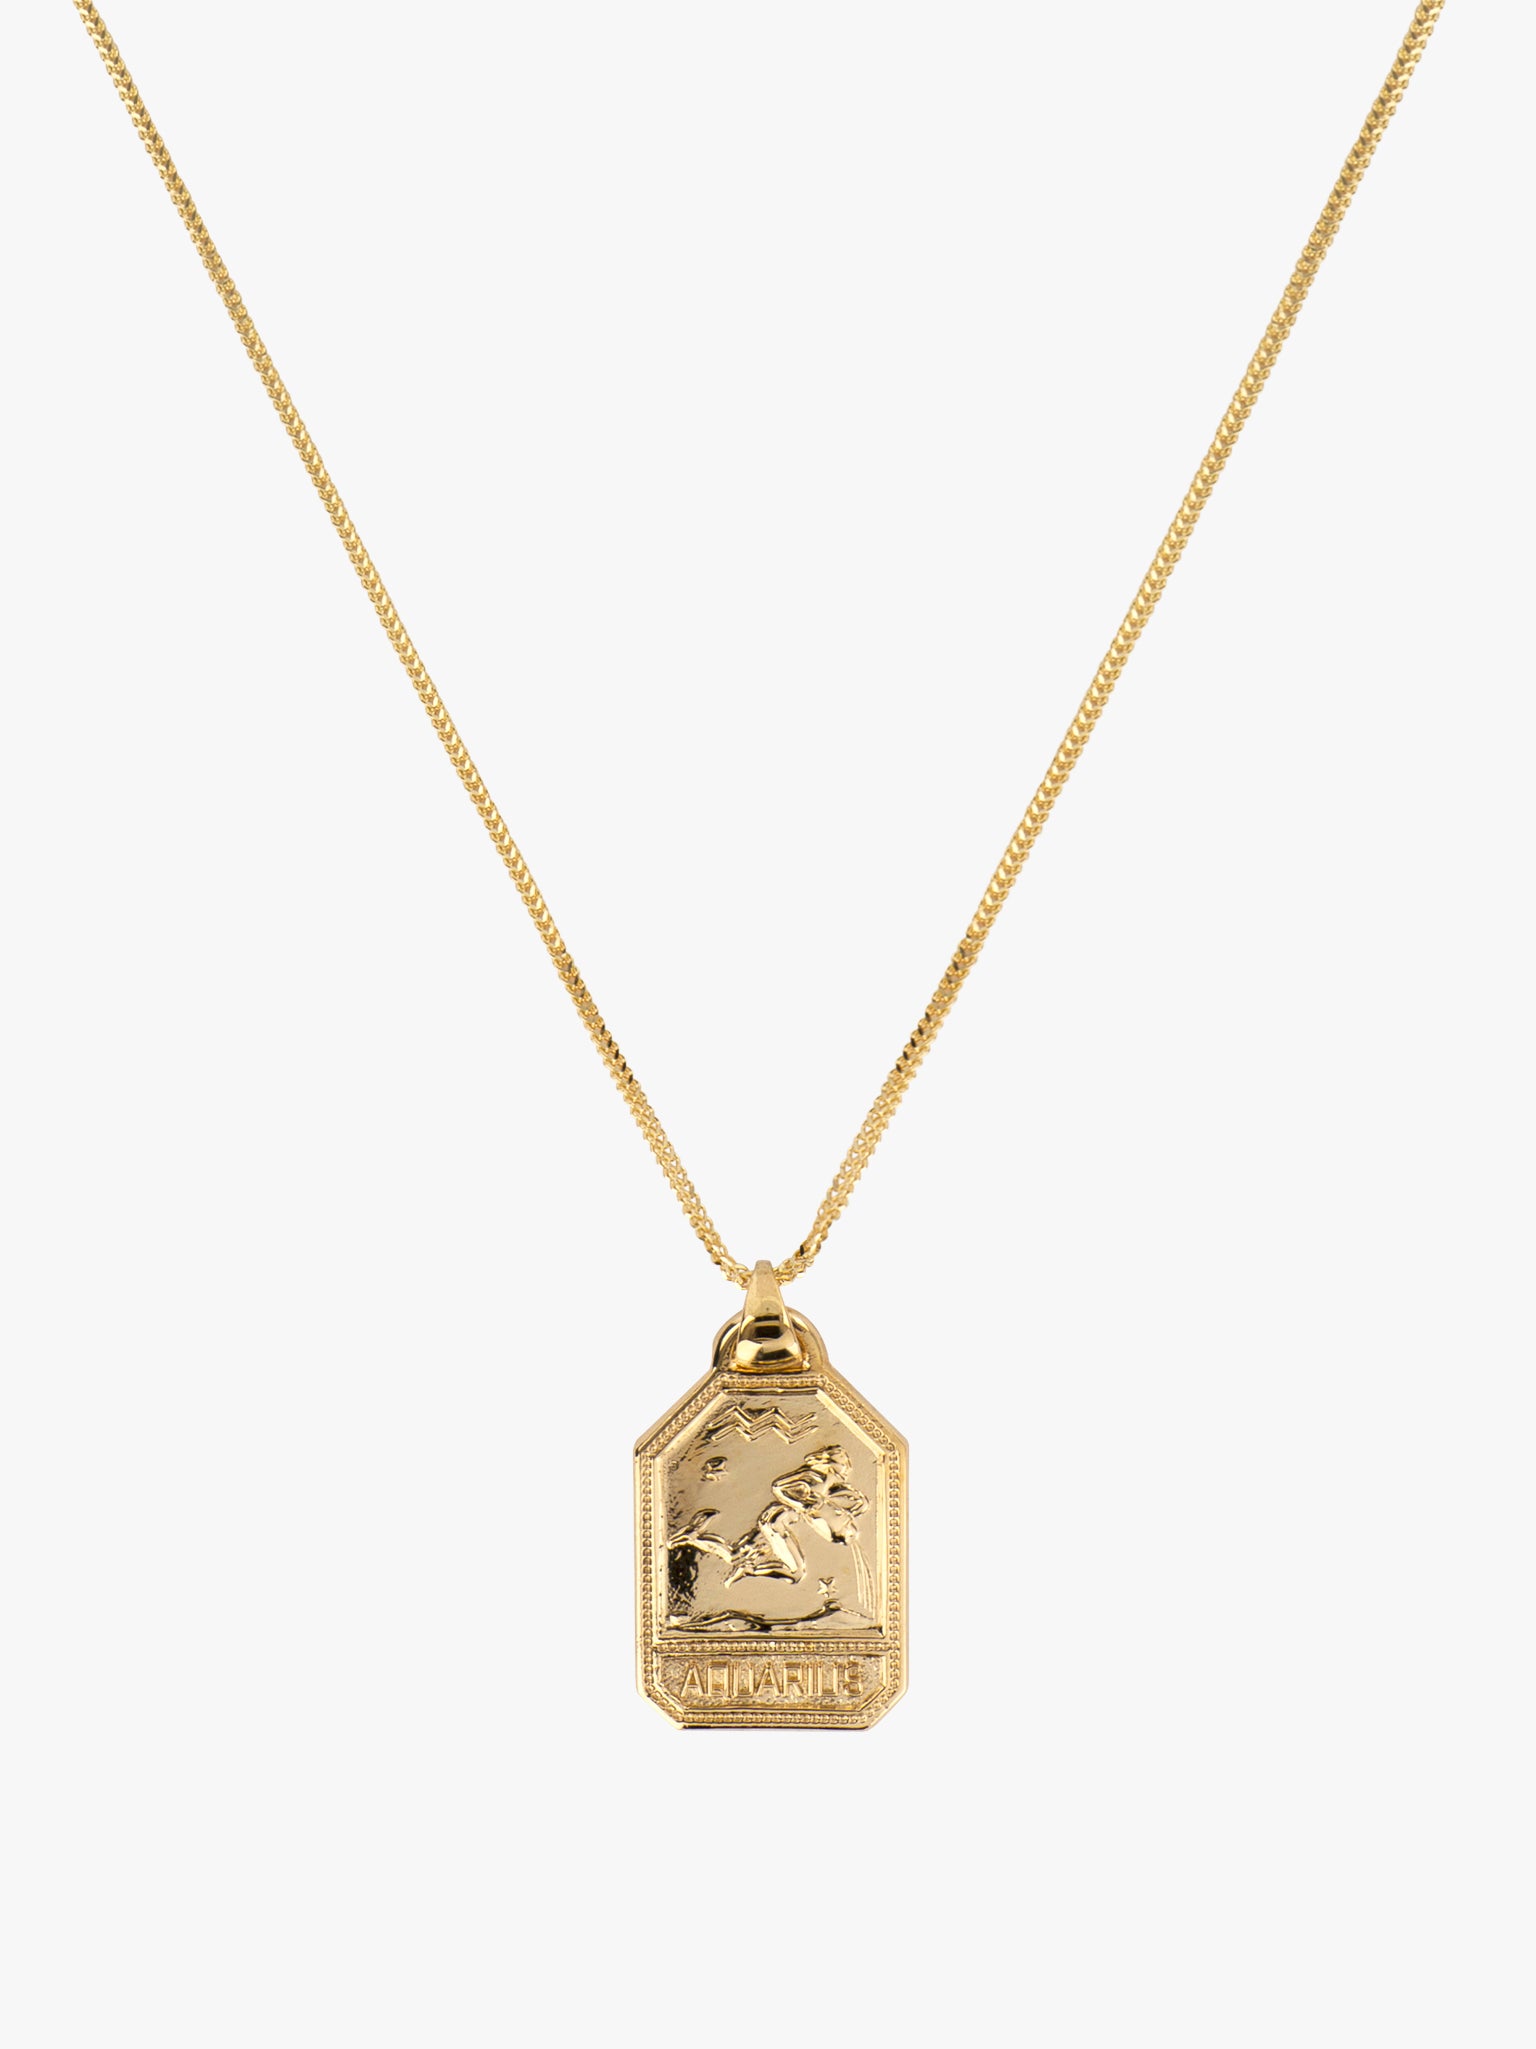 Zodiac dog tag necklace